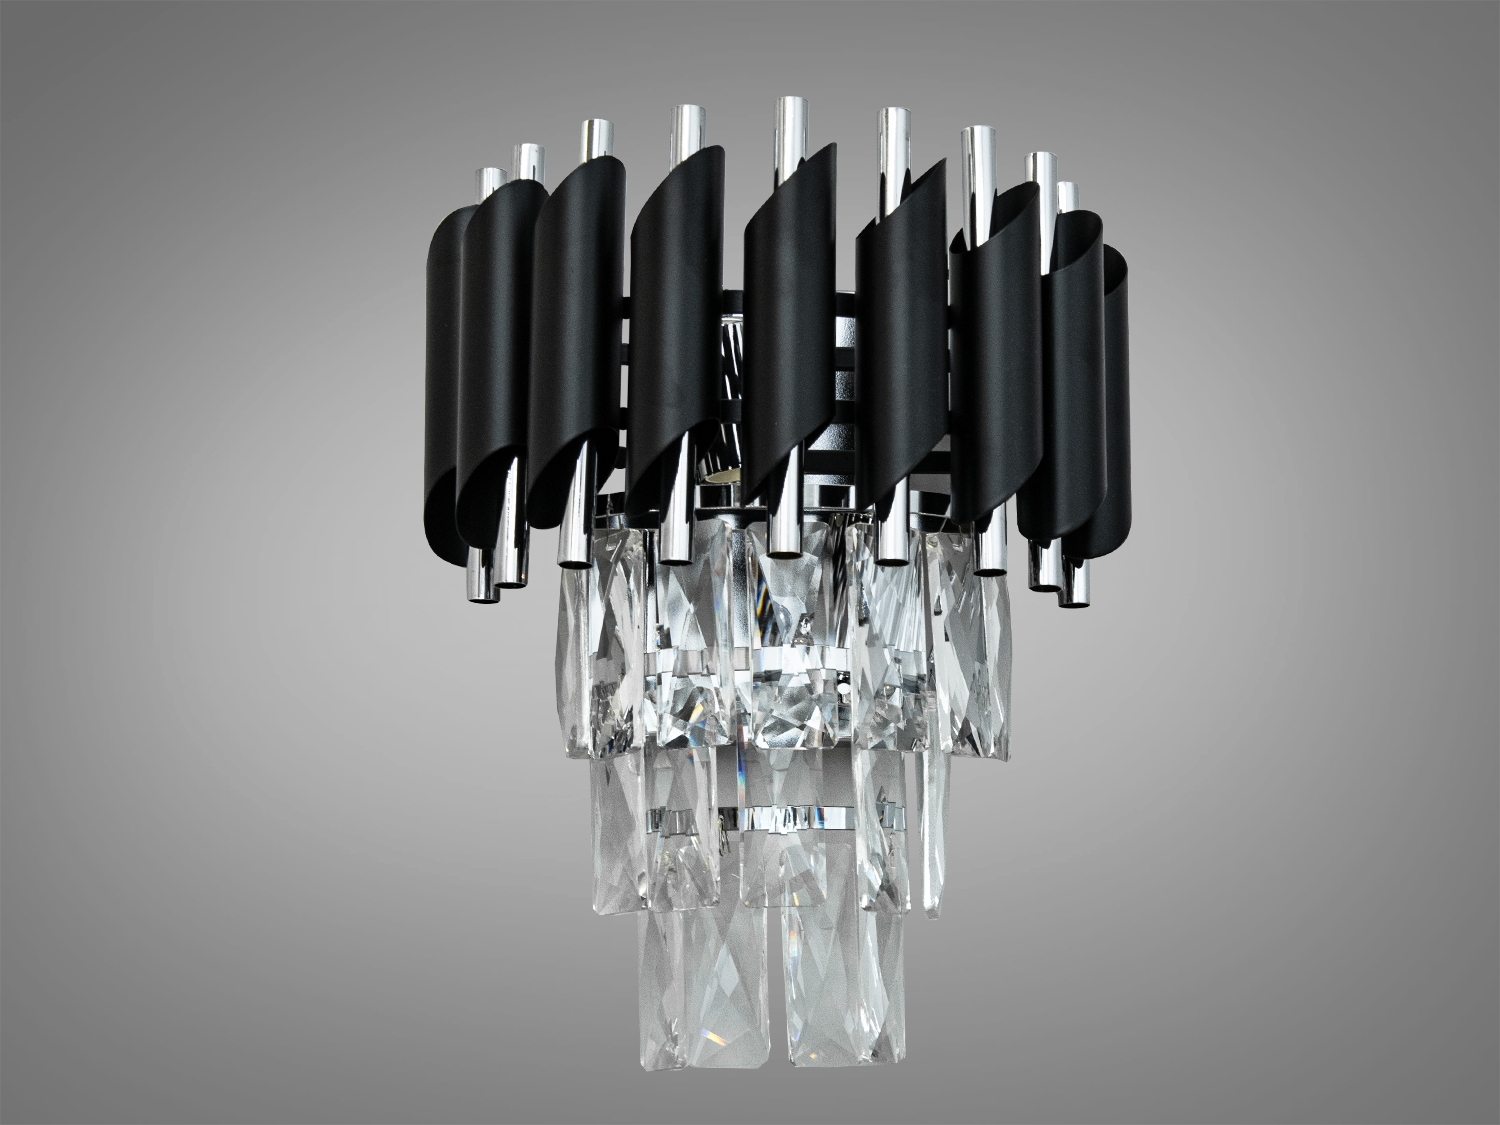 Сучасний кришталевий настінний світильник на 2 лампи. Світильник пропонується за ціною, що робить його доступним для багатьох, пропонуючи неперевершену якість та стиль.